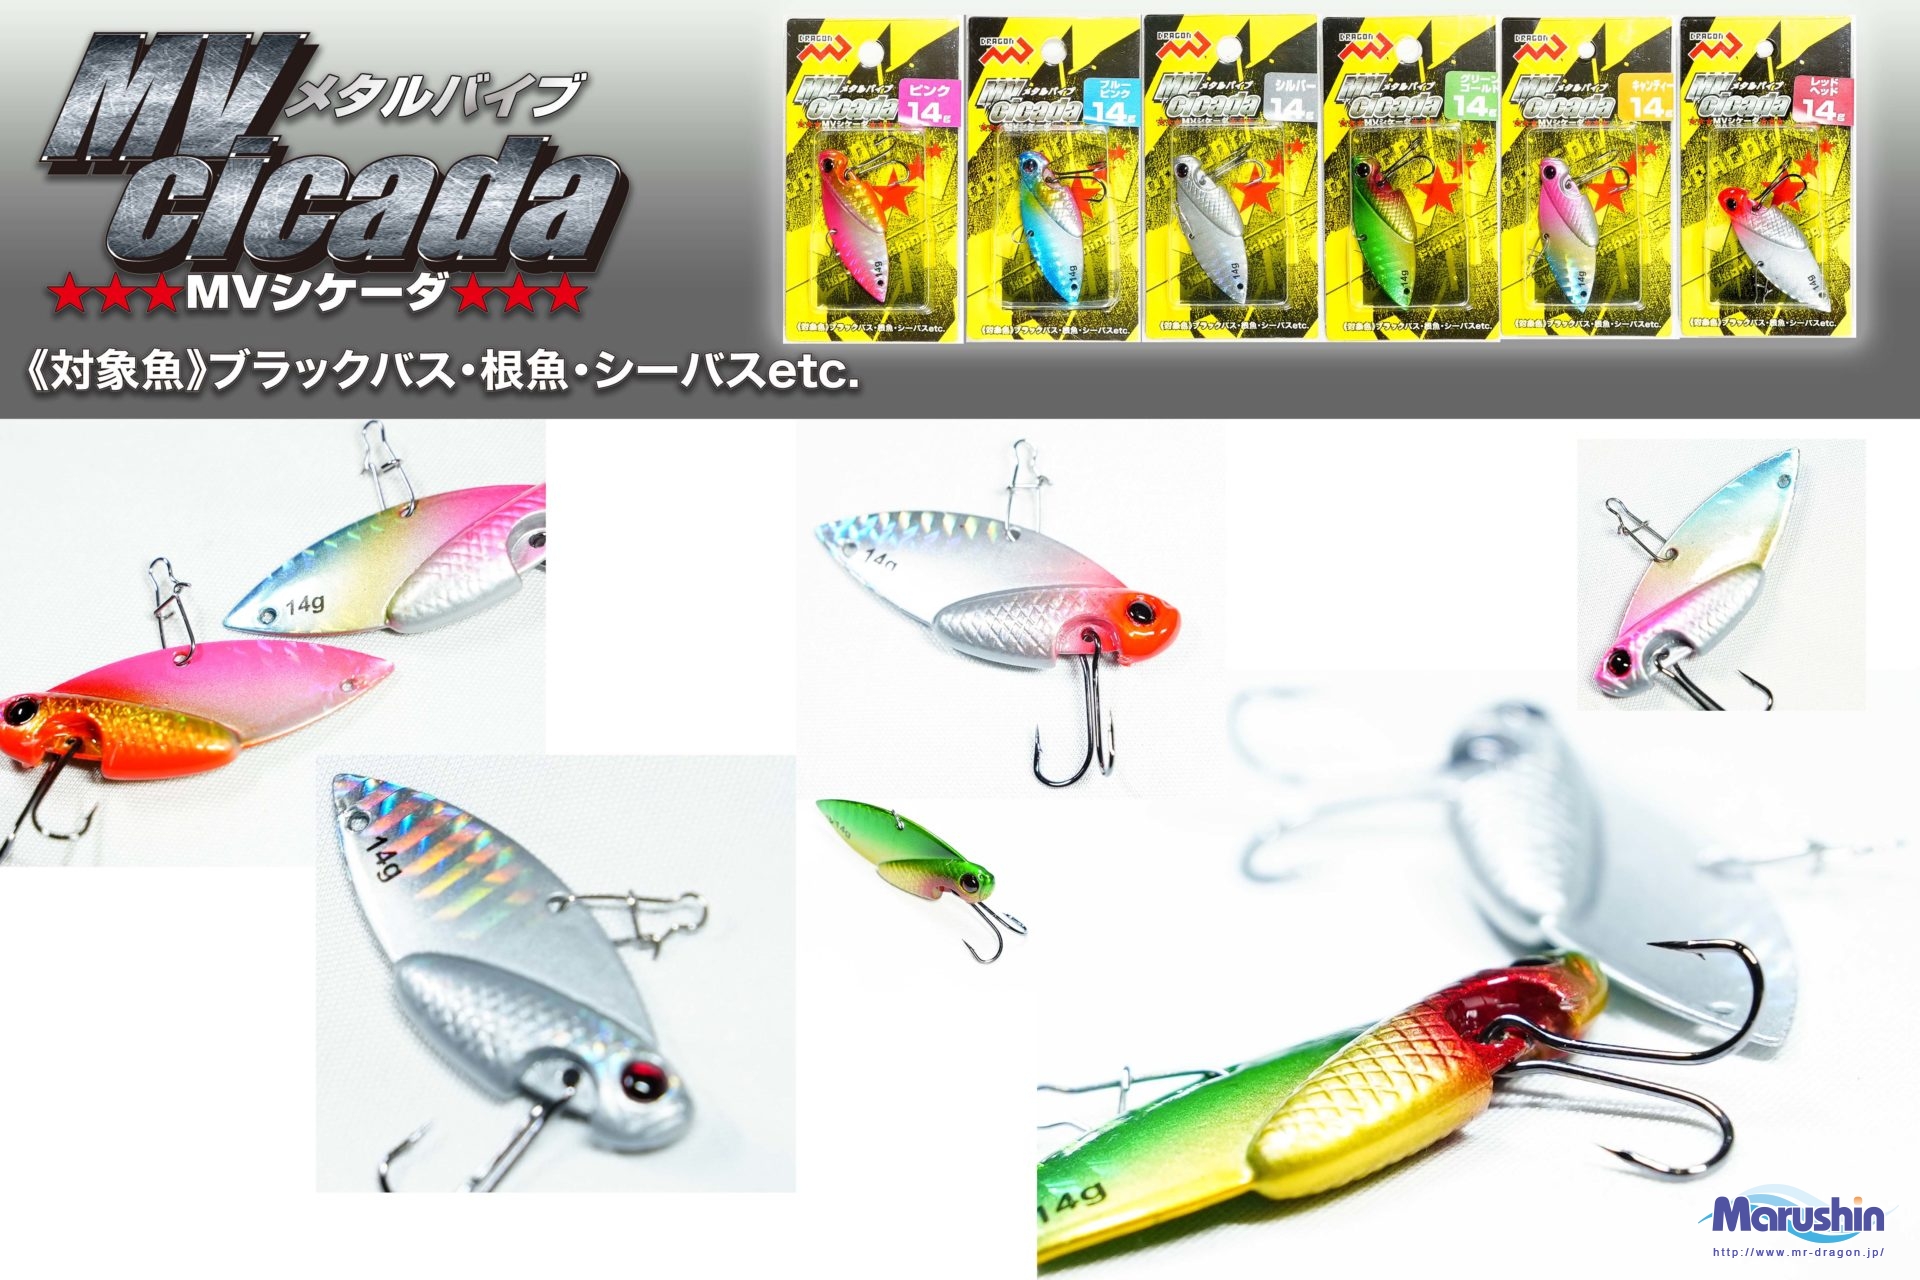 MV Cicada (MVシケーダ)6g、10g、14g 全6色イメージ画像